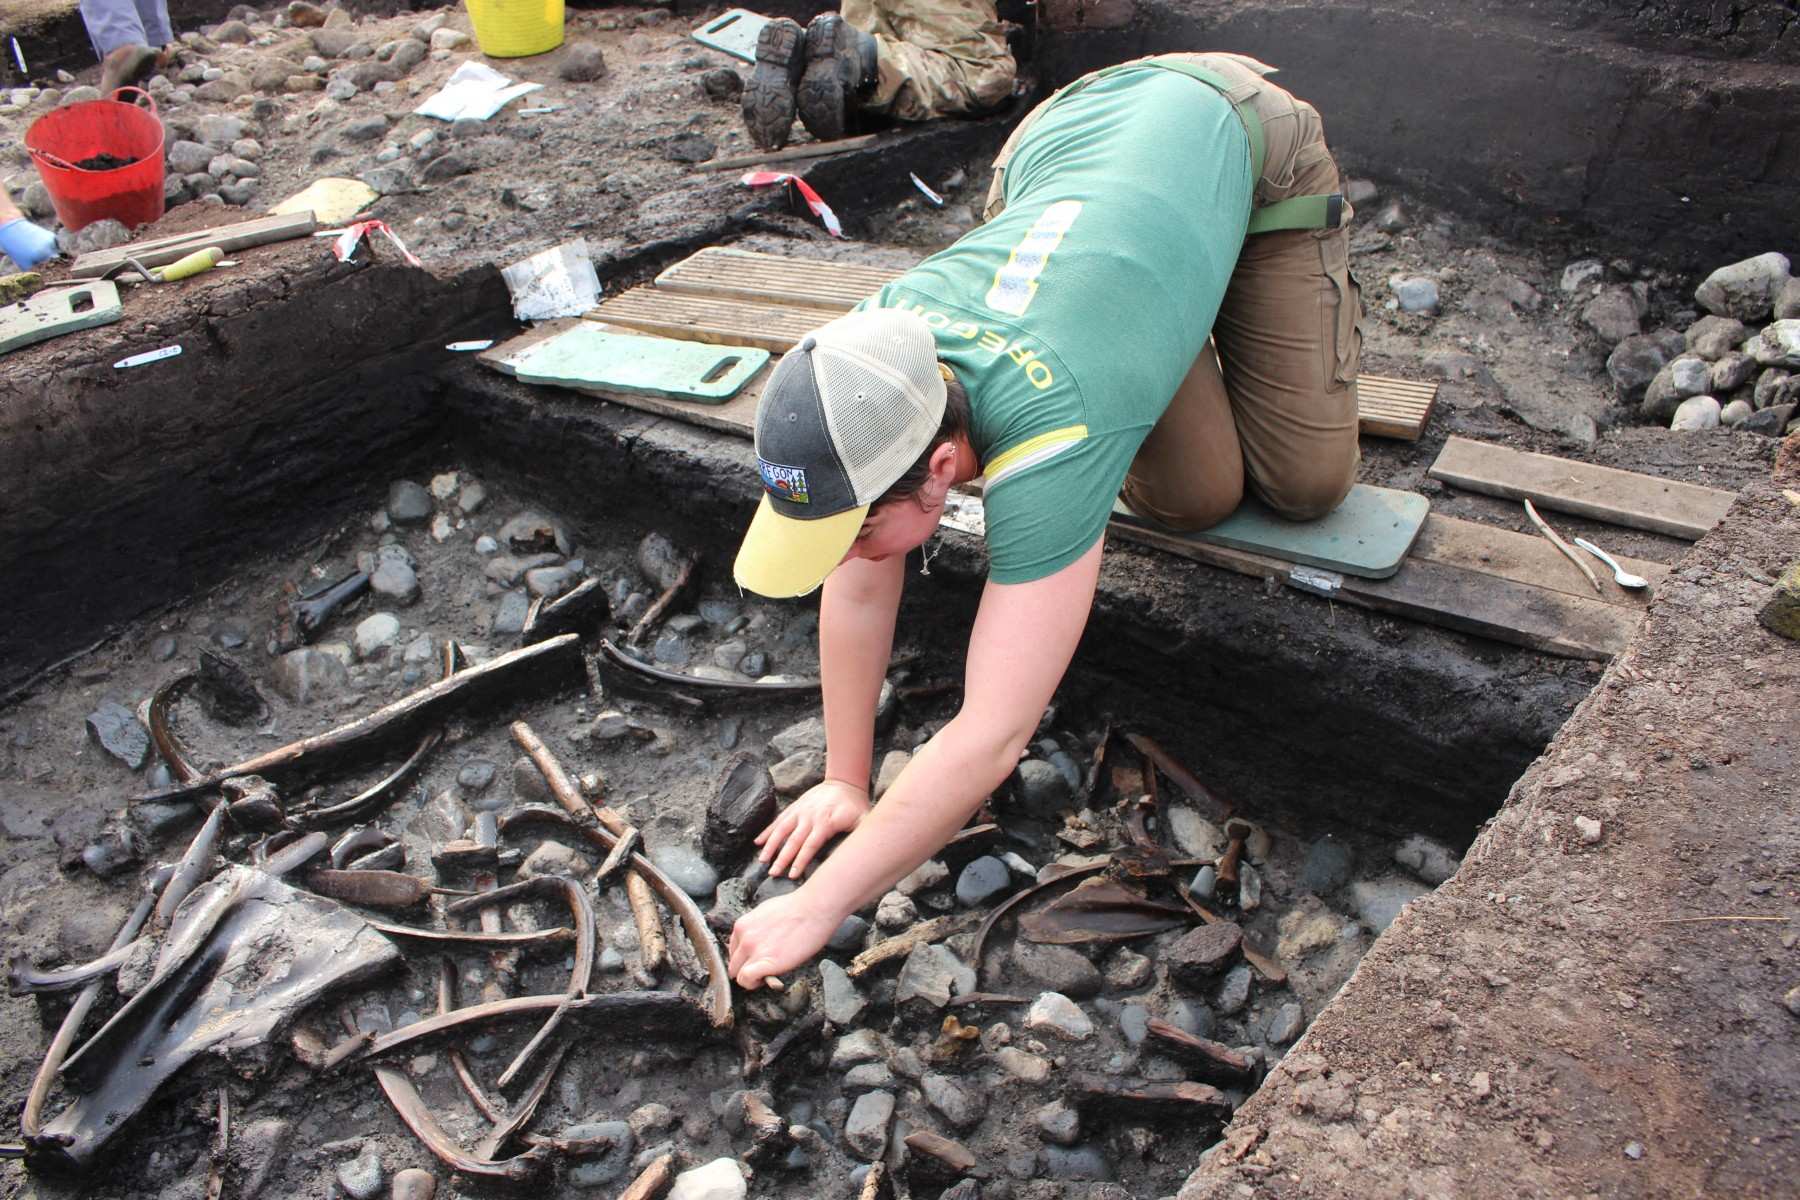 Tulang sato, parabot jeung pakarang, babarengan jeung bukti langka tina woodworking, anu unearthed salila excavations di situs deukeut Scarborough.